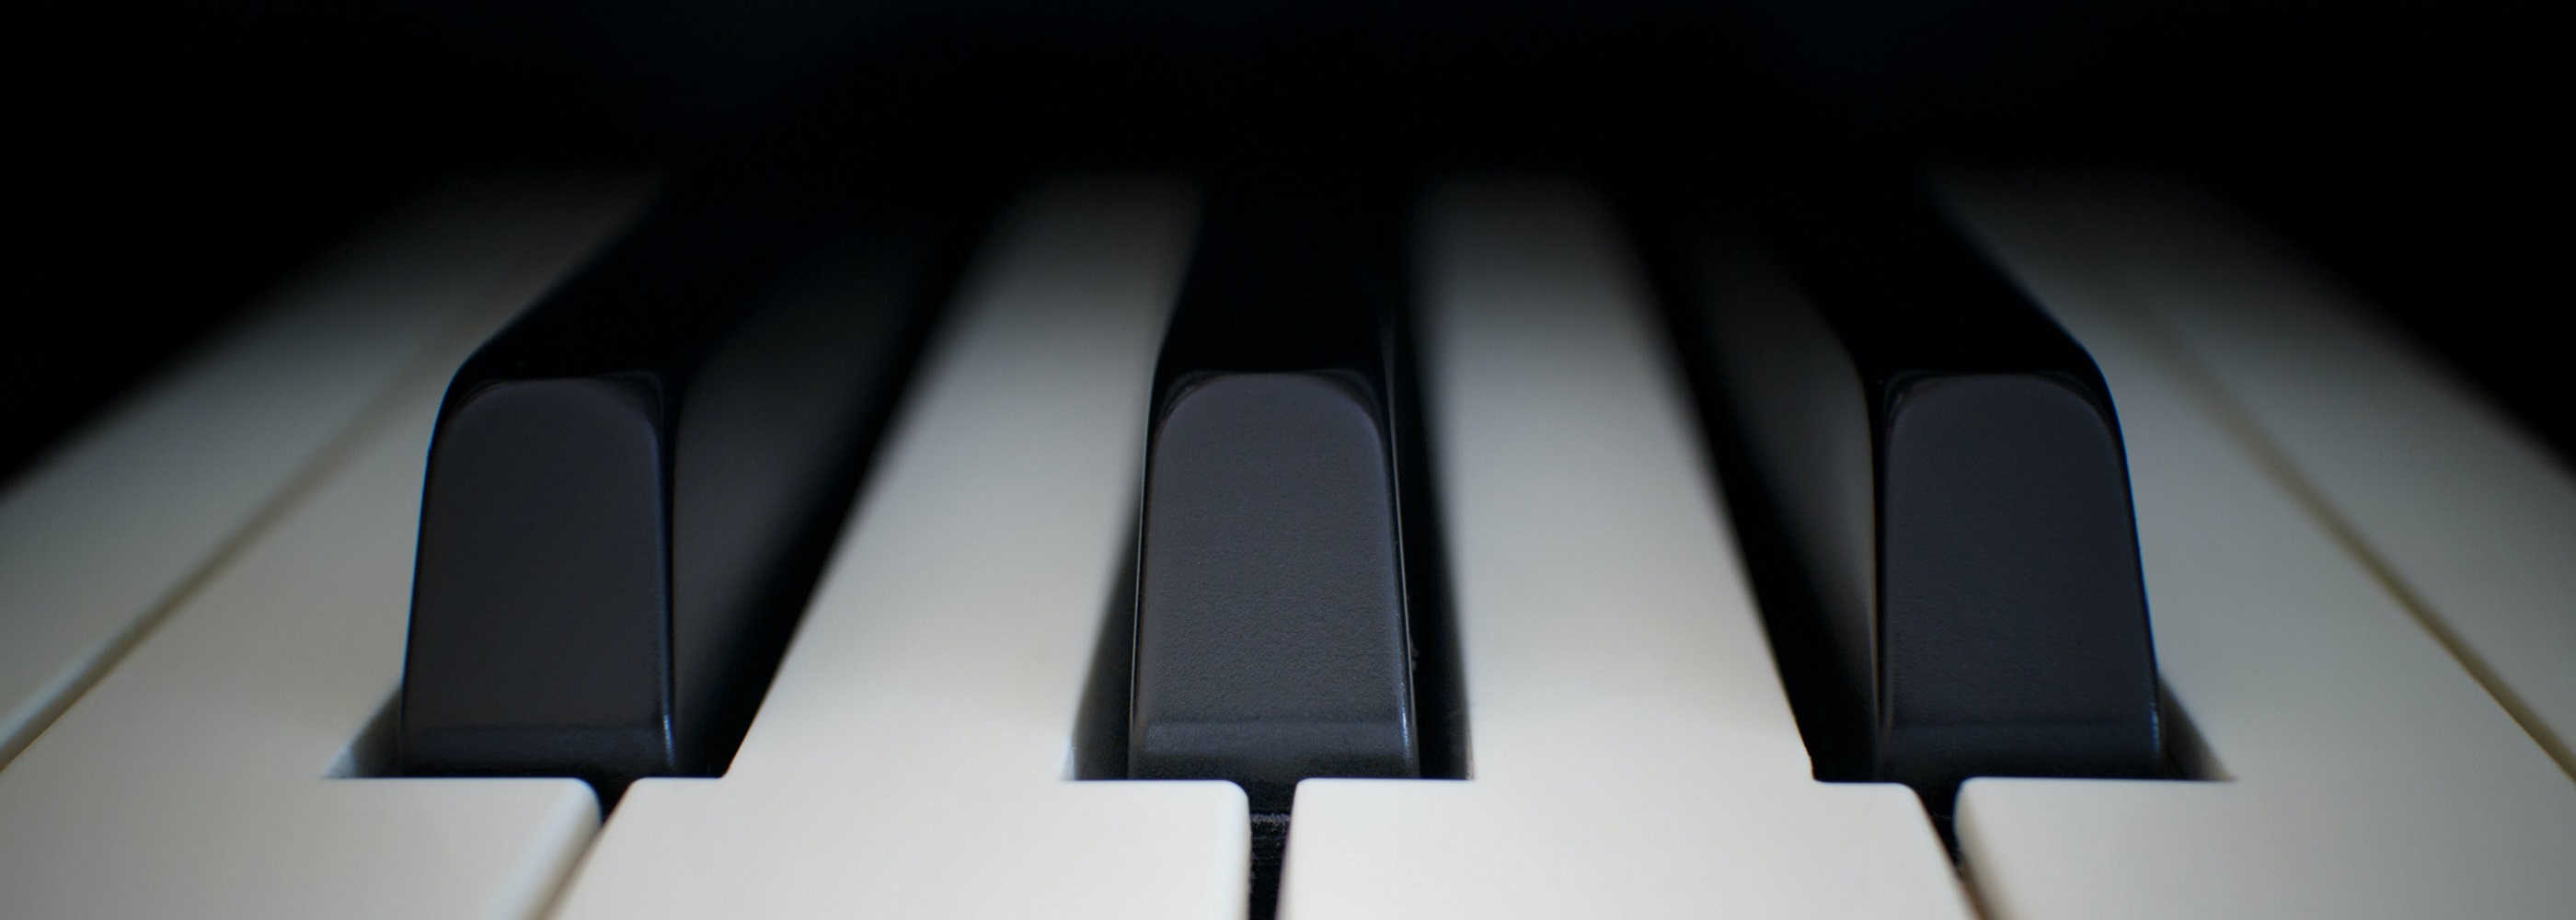 Close up shot of piano keys